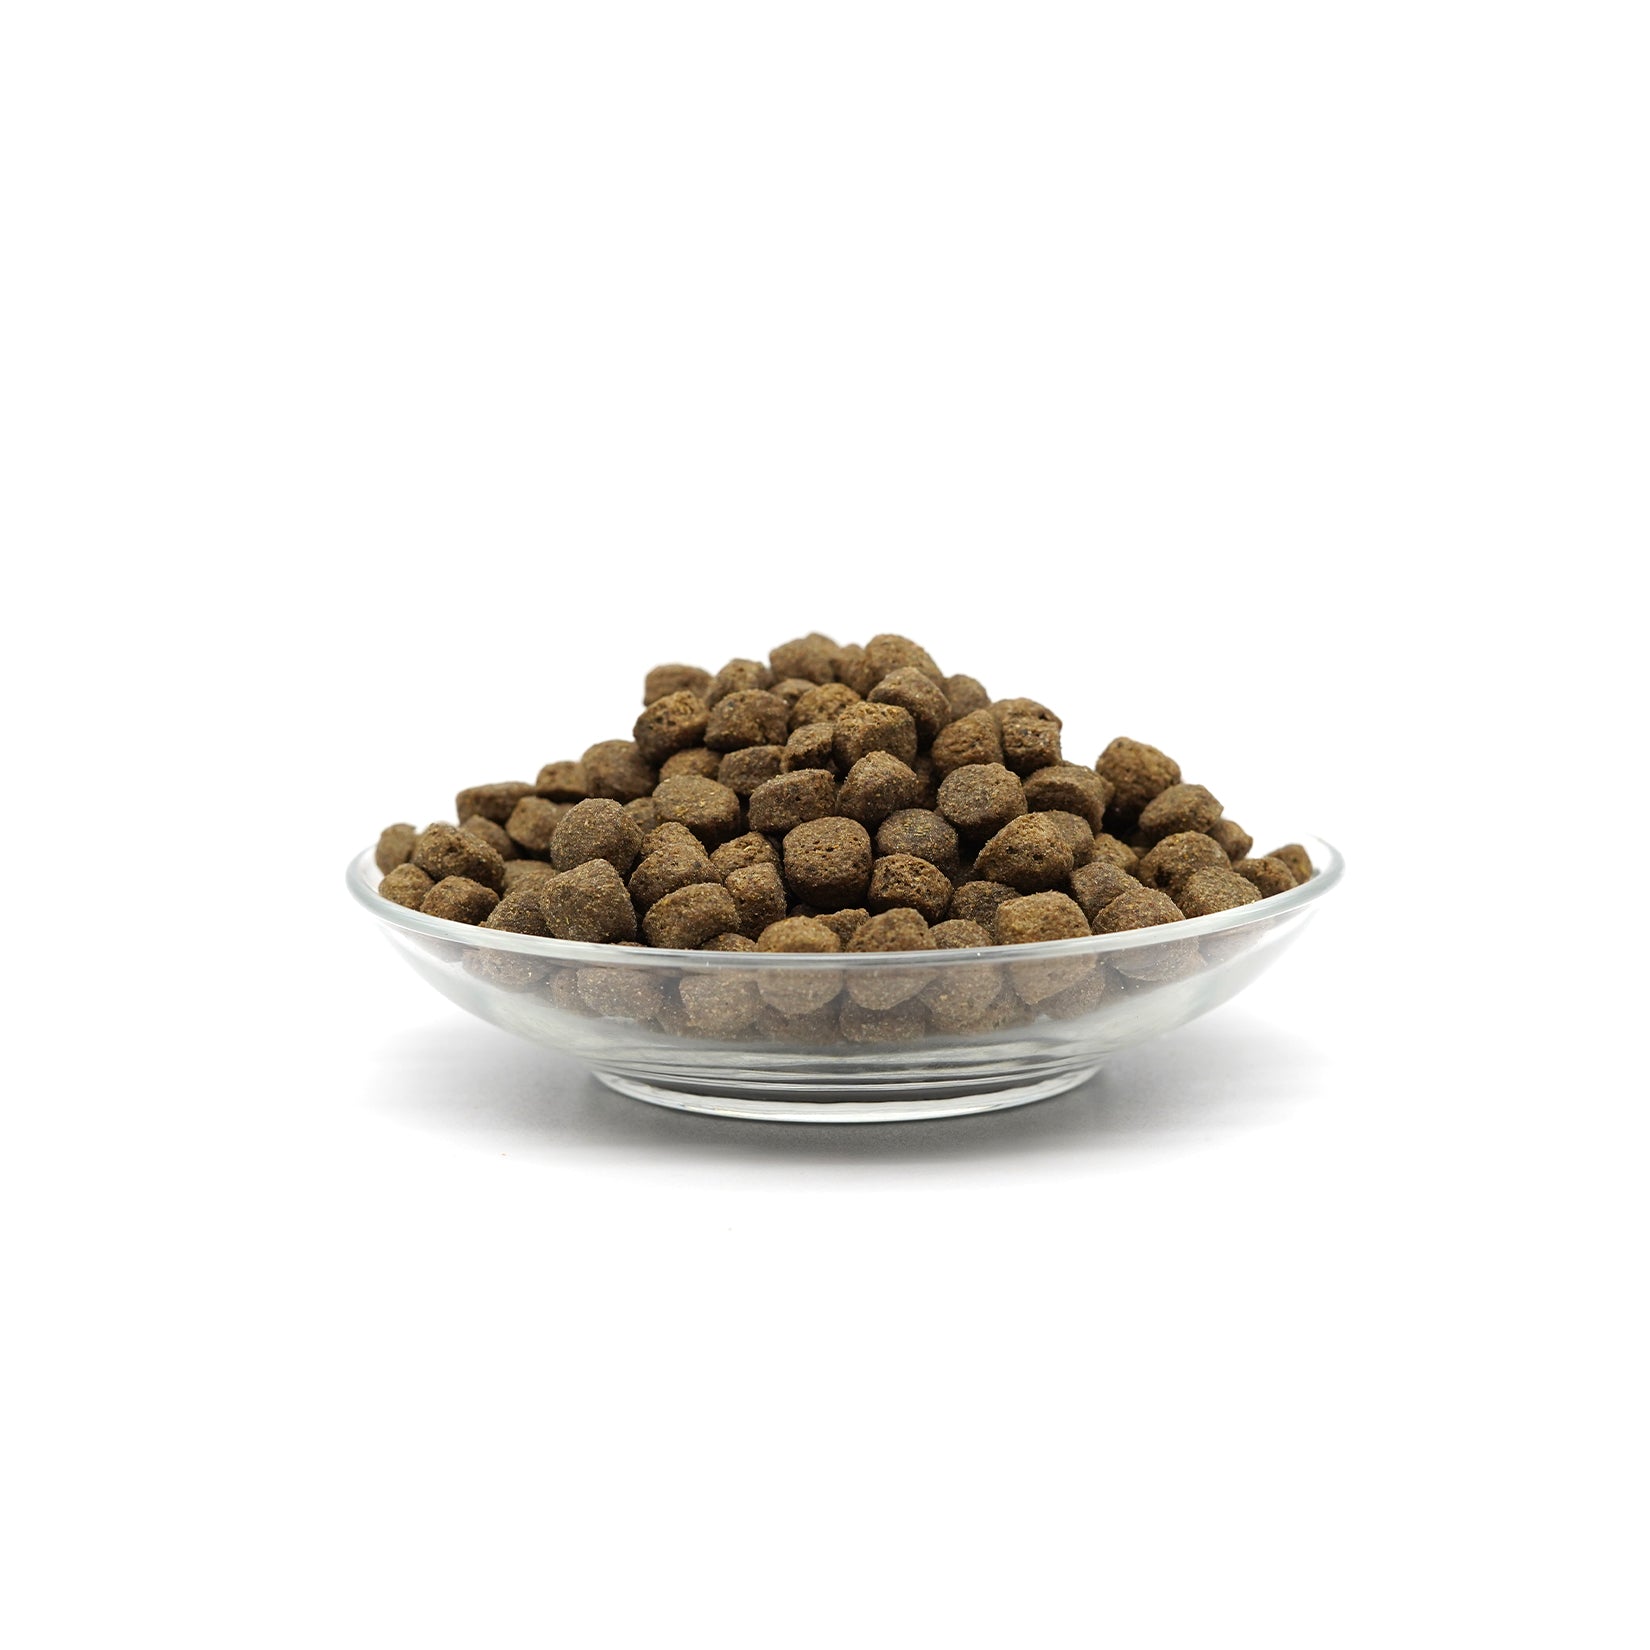 Trockenfutter für Hunde mit Insekten Getreidefrei - Naturfarm-Schmaus von Bellfor Hundefutter - 2,5 kg